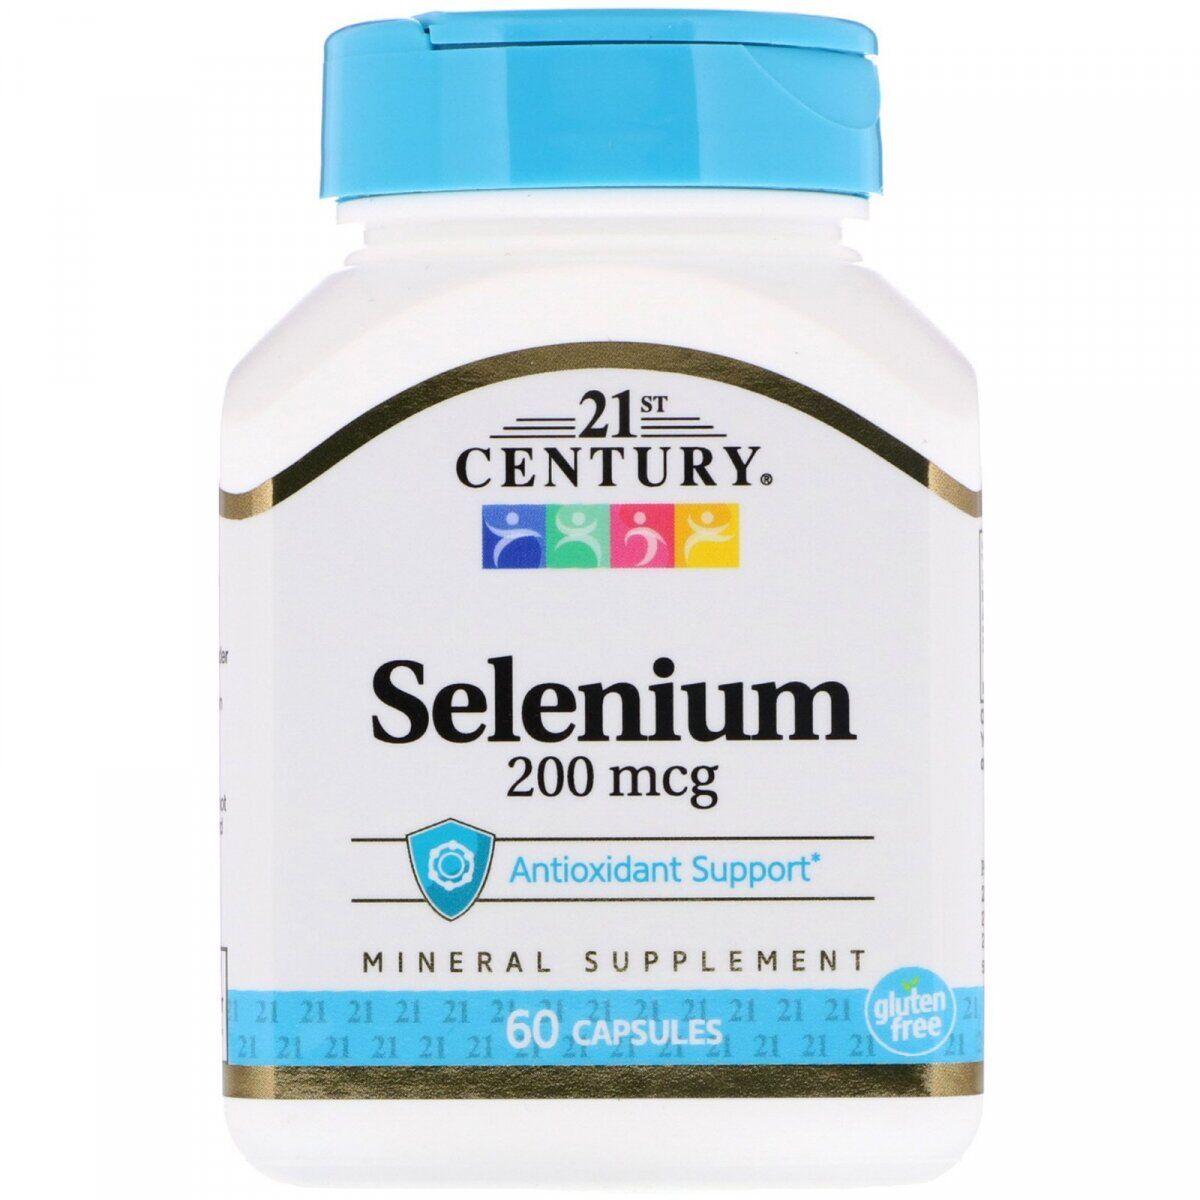 Харчова добавка 21st Century Selenium 200 mcg 60 Caps,  ml, 21st Century. Special supplements. 